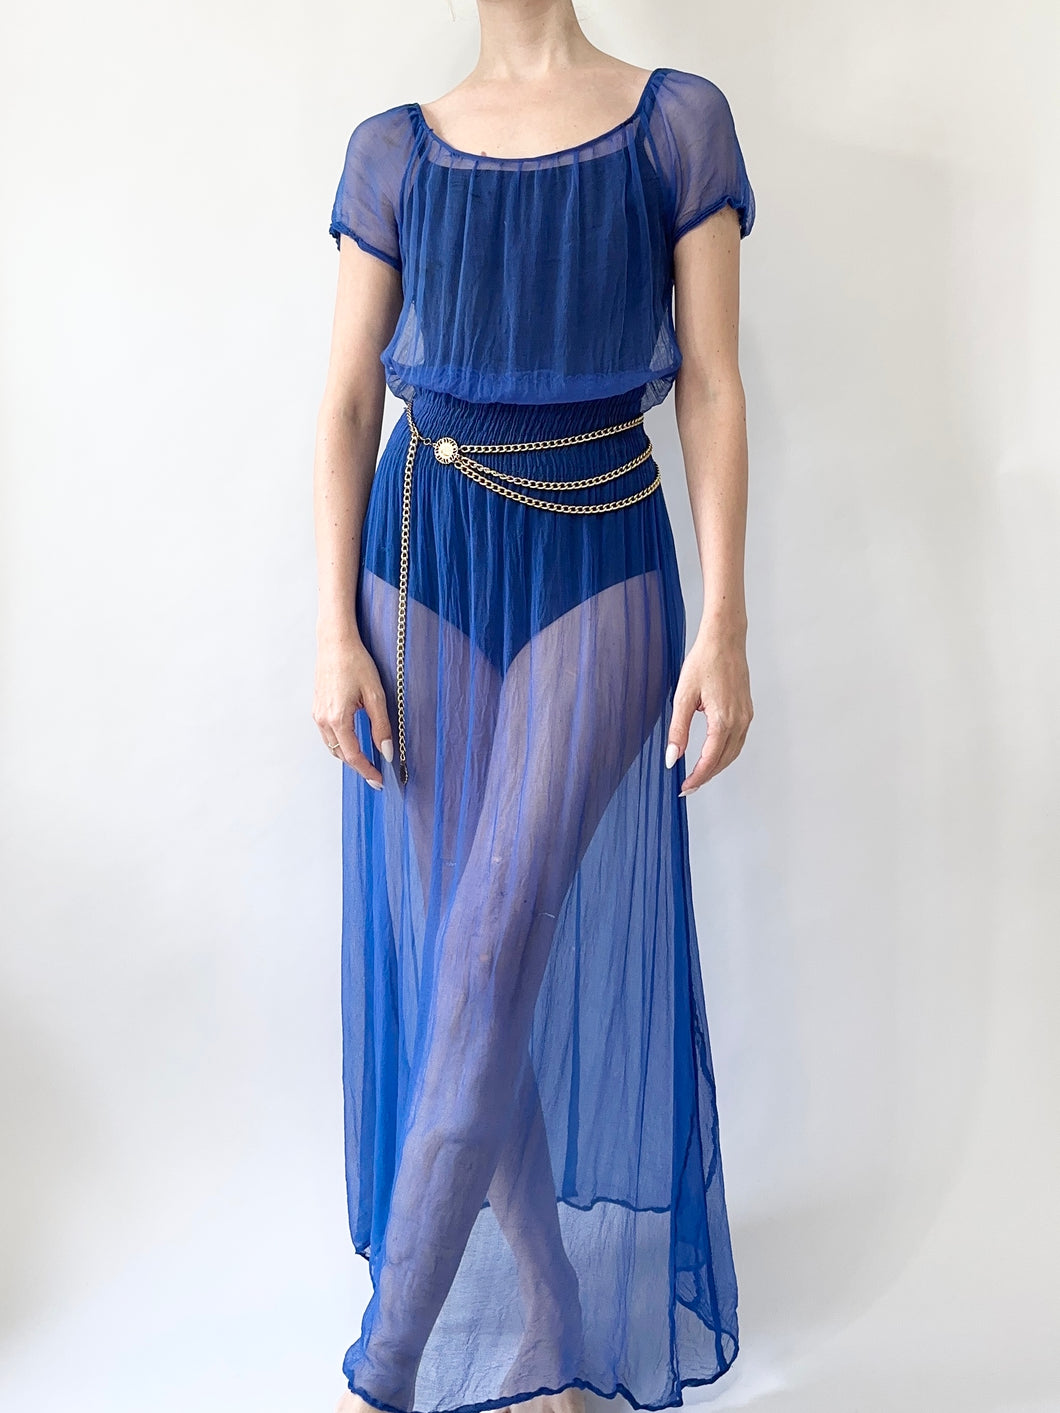 Antique 1930s Sheer Blue Silk Slip Dress (XS)